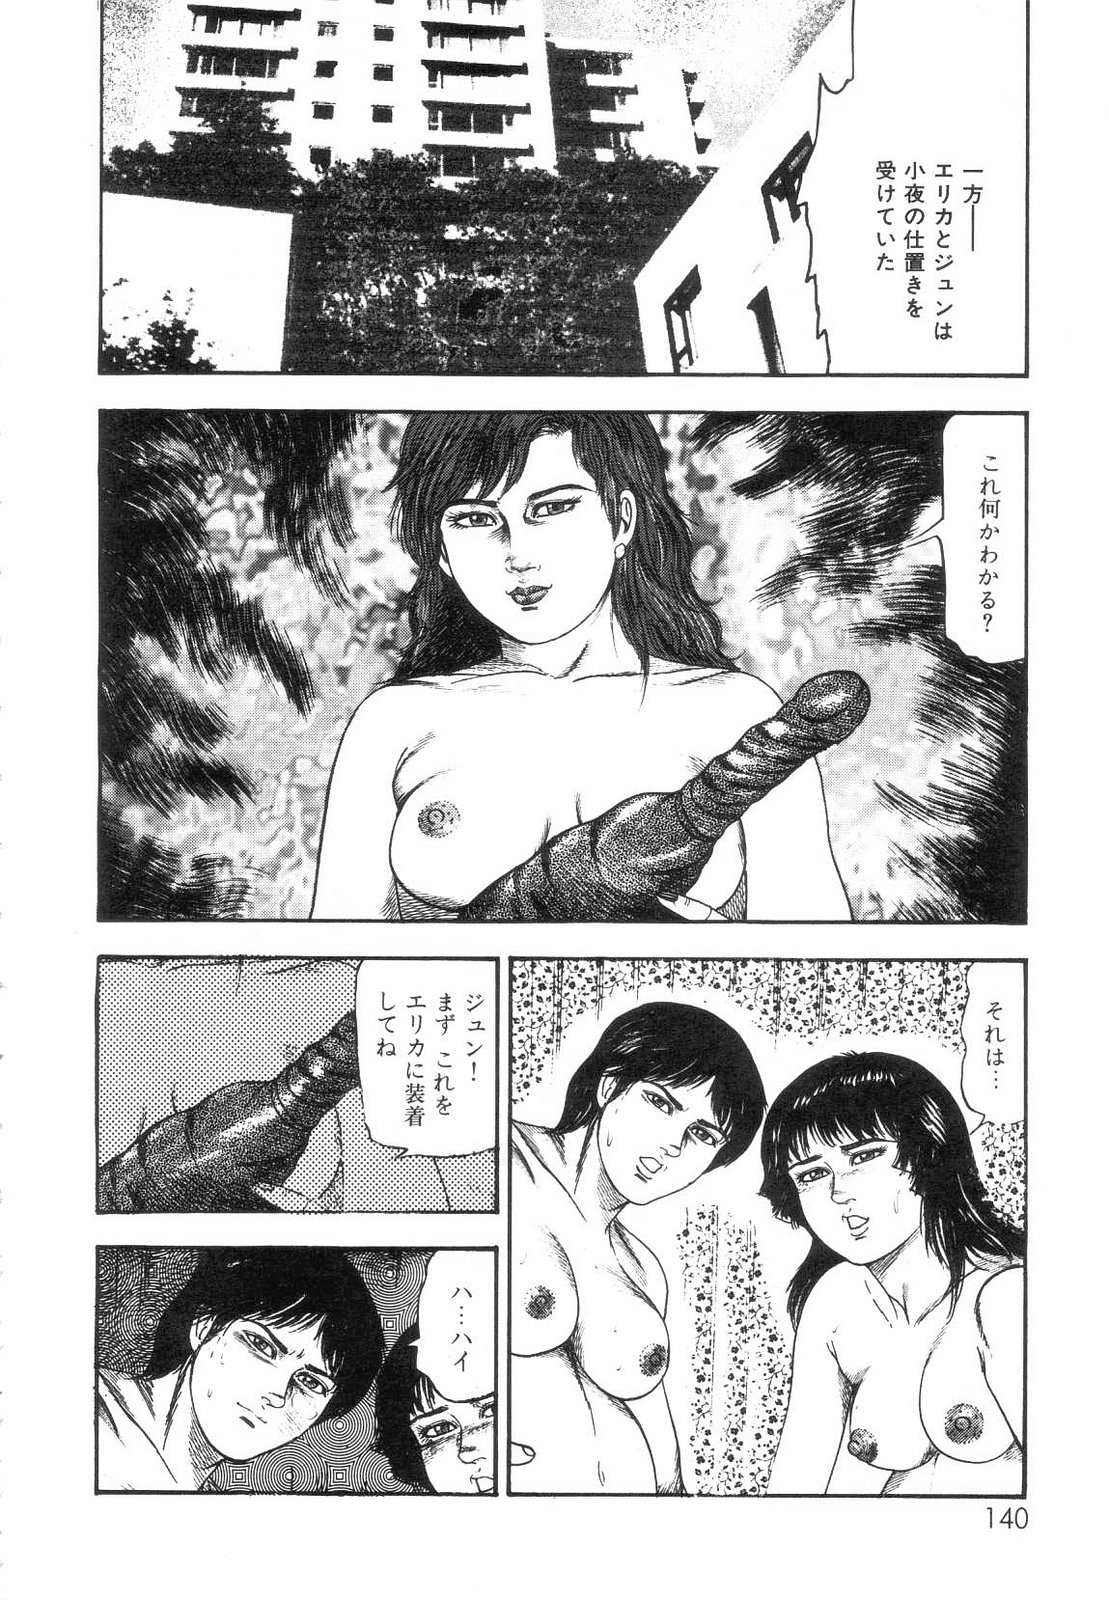 [Sanjou Tomomi] Shiro no Mokushiroku Vol. 7 - Shiiku Ningyou Erika no Shou 141